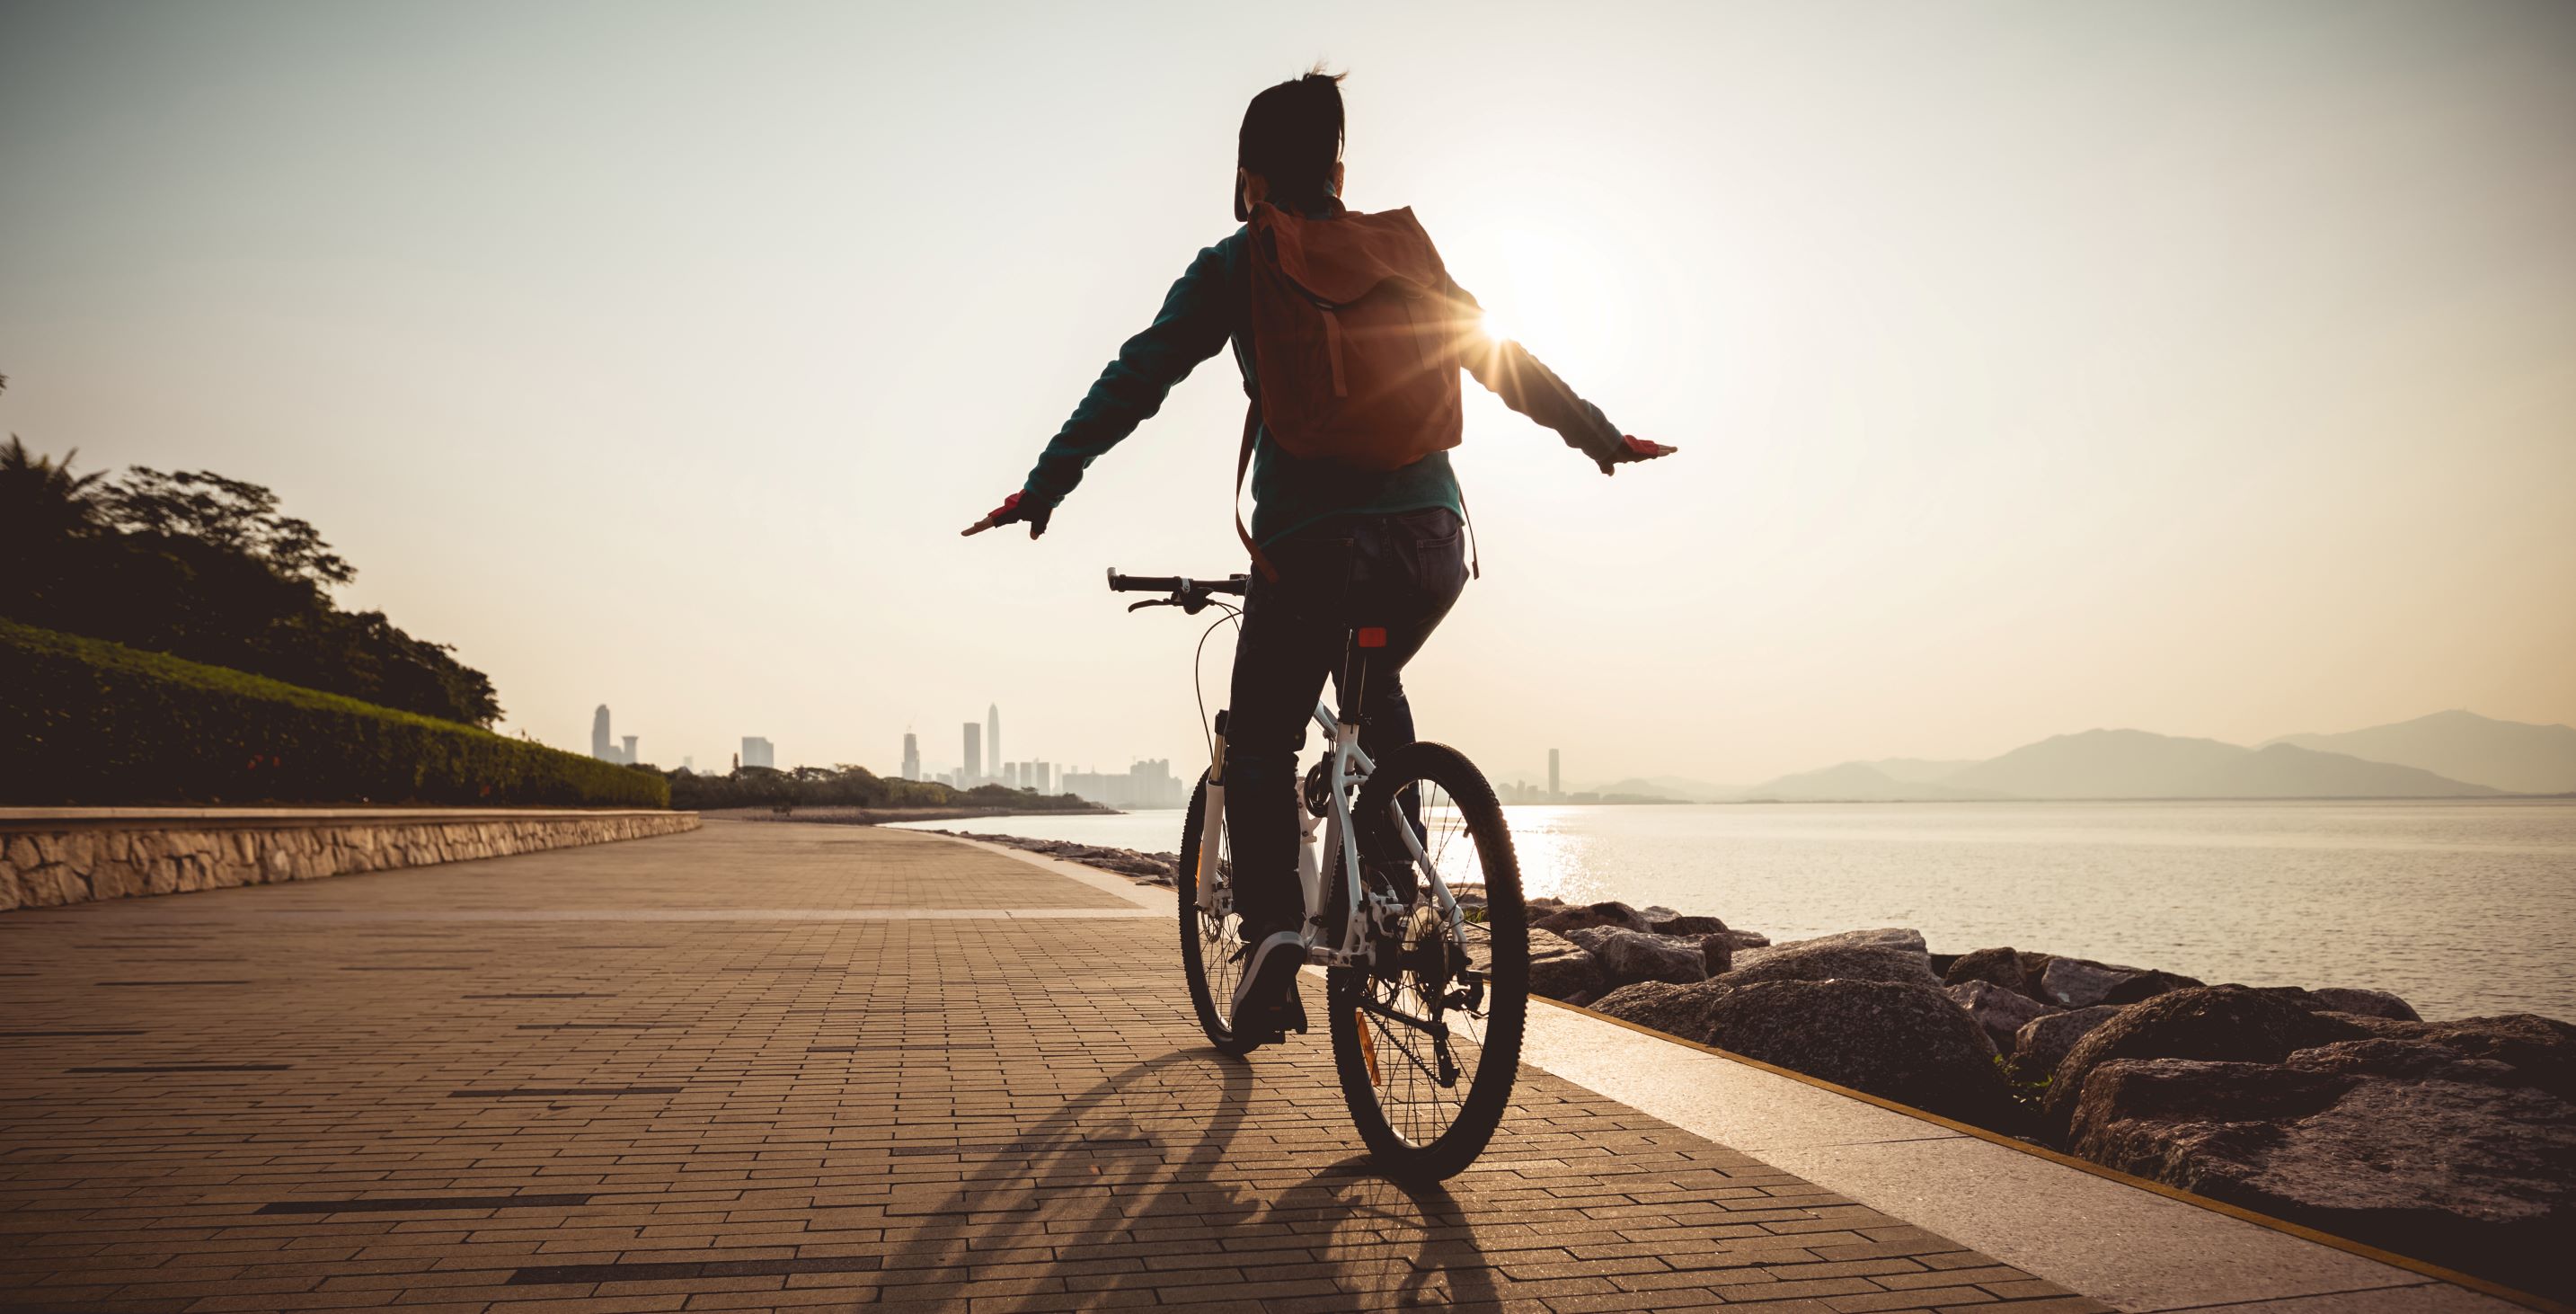 mentális jólét és kalóriaégetés kerékpározás közben